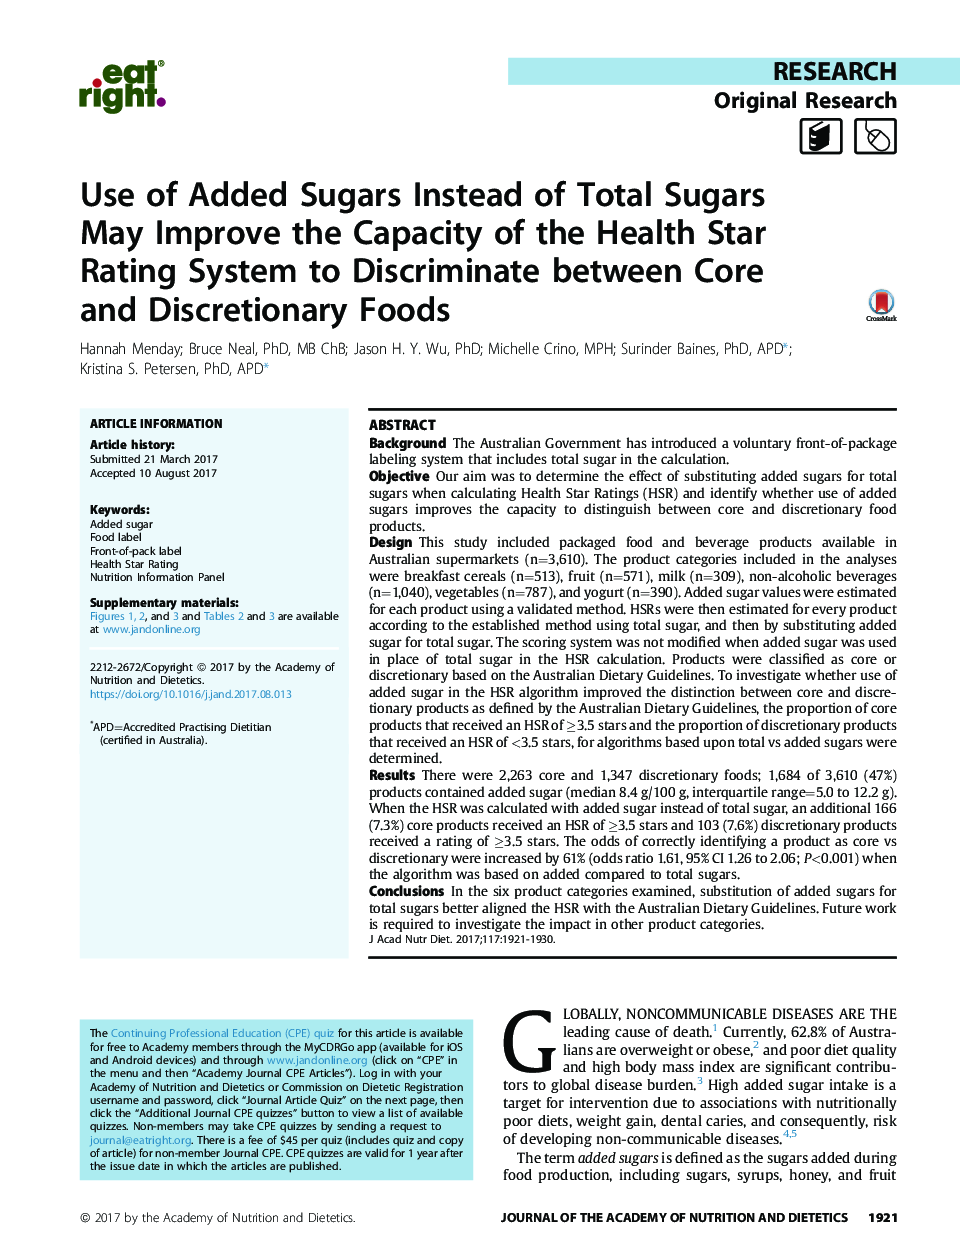 استفاده از شکر های اضافه شده به جای کل شکر ها می تواند ظرفیت سیستم رتبه بندی سلامت را به منظور تبعیض بین غذاهای هسته و مواد مخدر بهبود دهد 